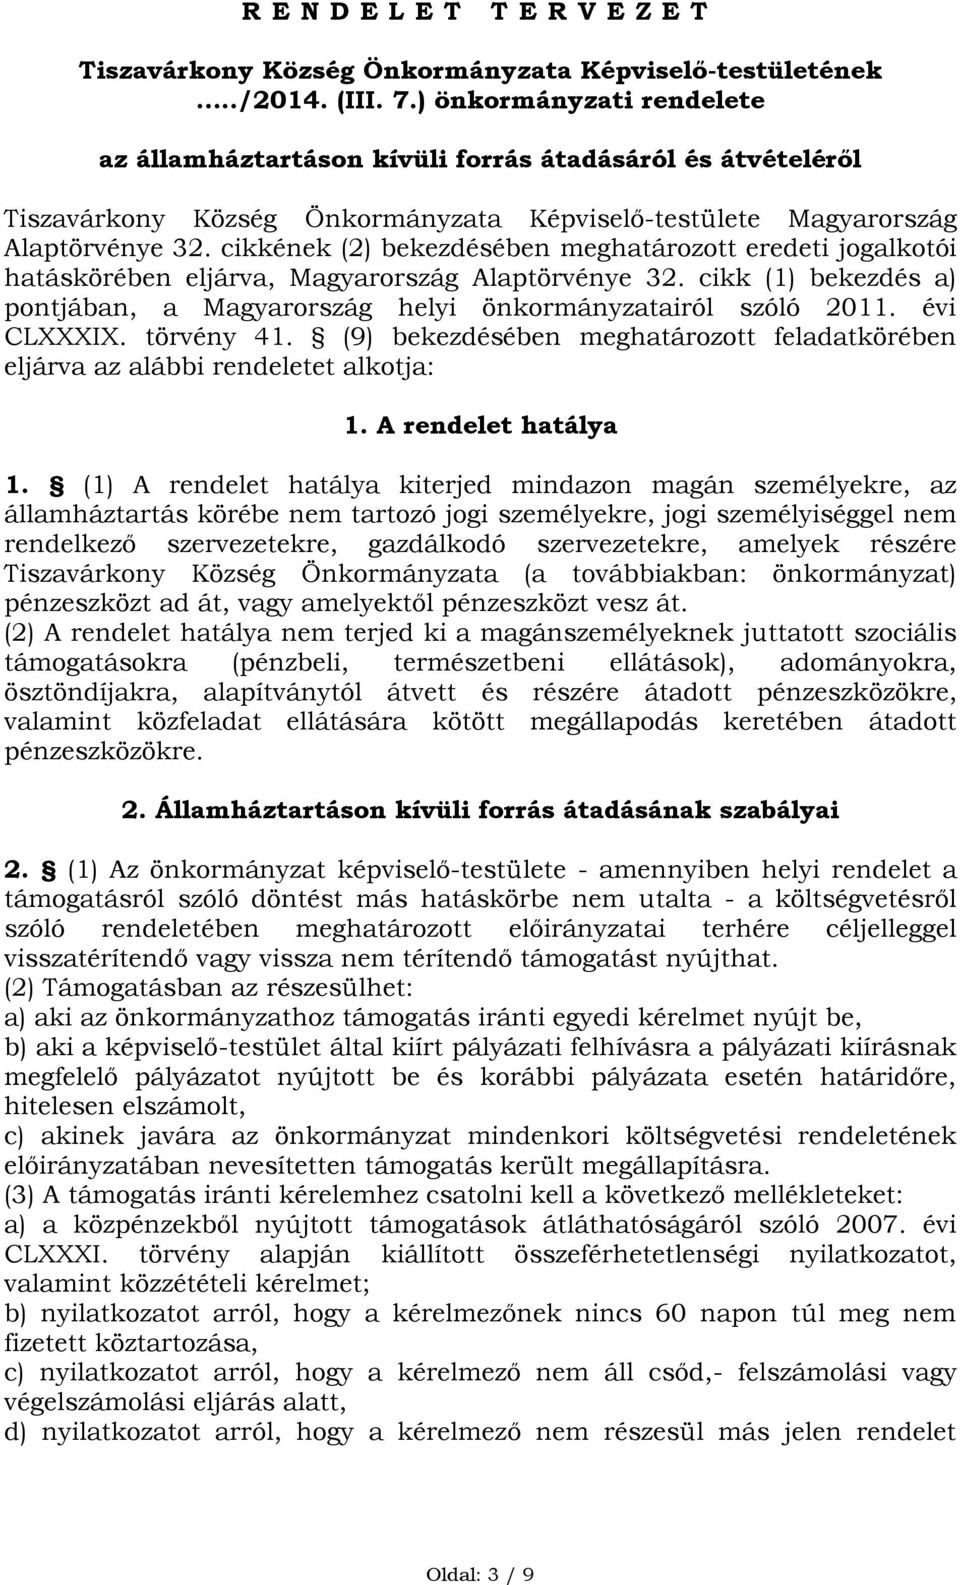 cikkének (2) bekezdésében meghatározott eredeti jogalkotói hatáskörében eljárva, Magyarország Alaptörvénye 32. cikk (1) bekezdés a) pontjában, a Magyarország helyi önkormányzatairól szóló 2011.